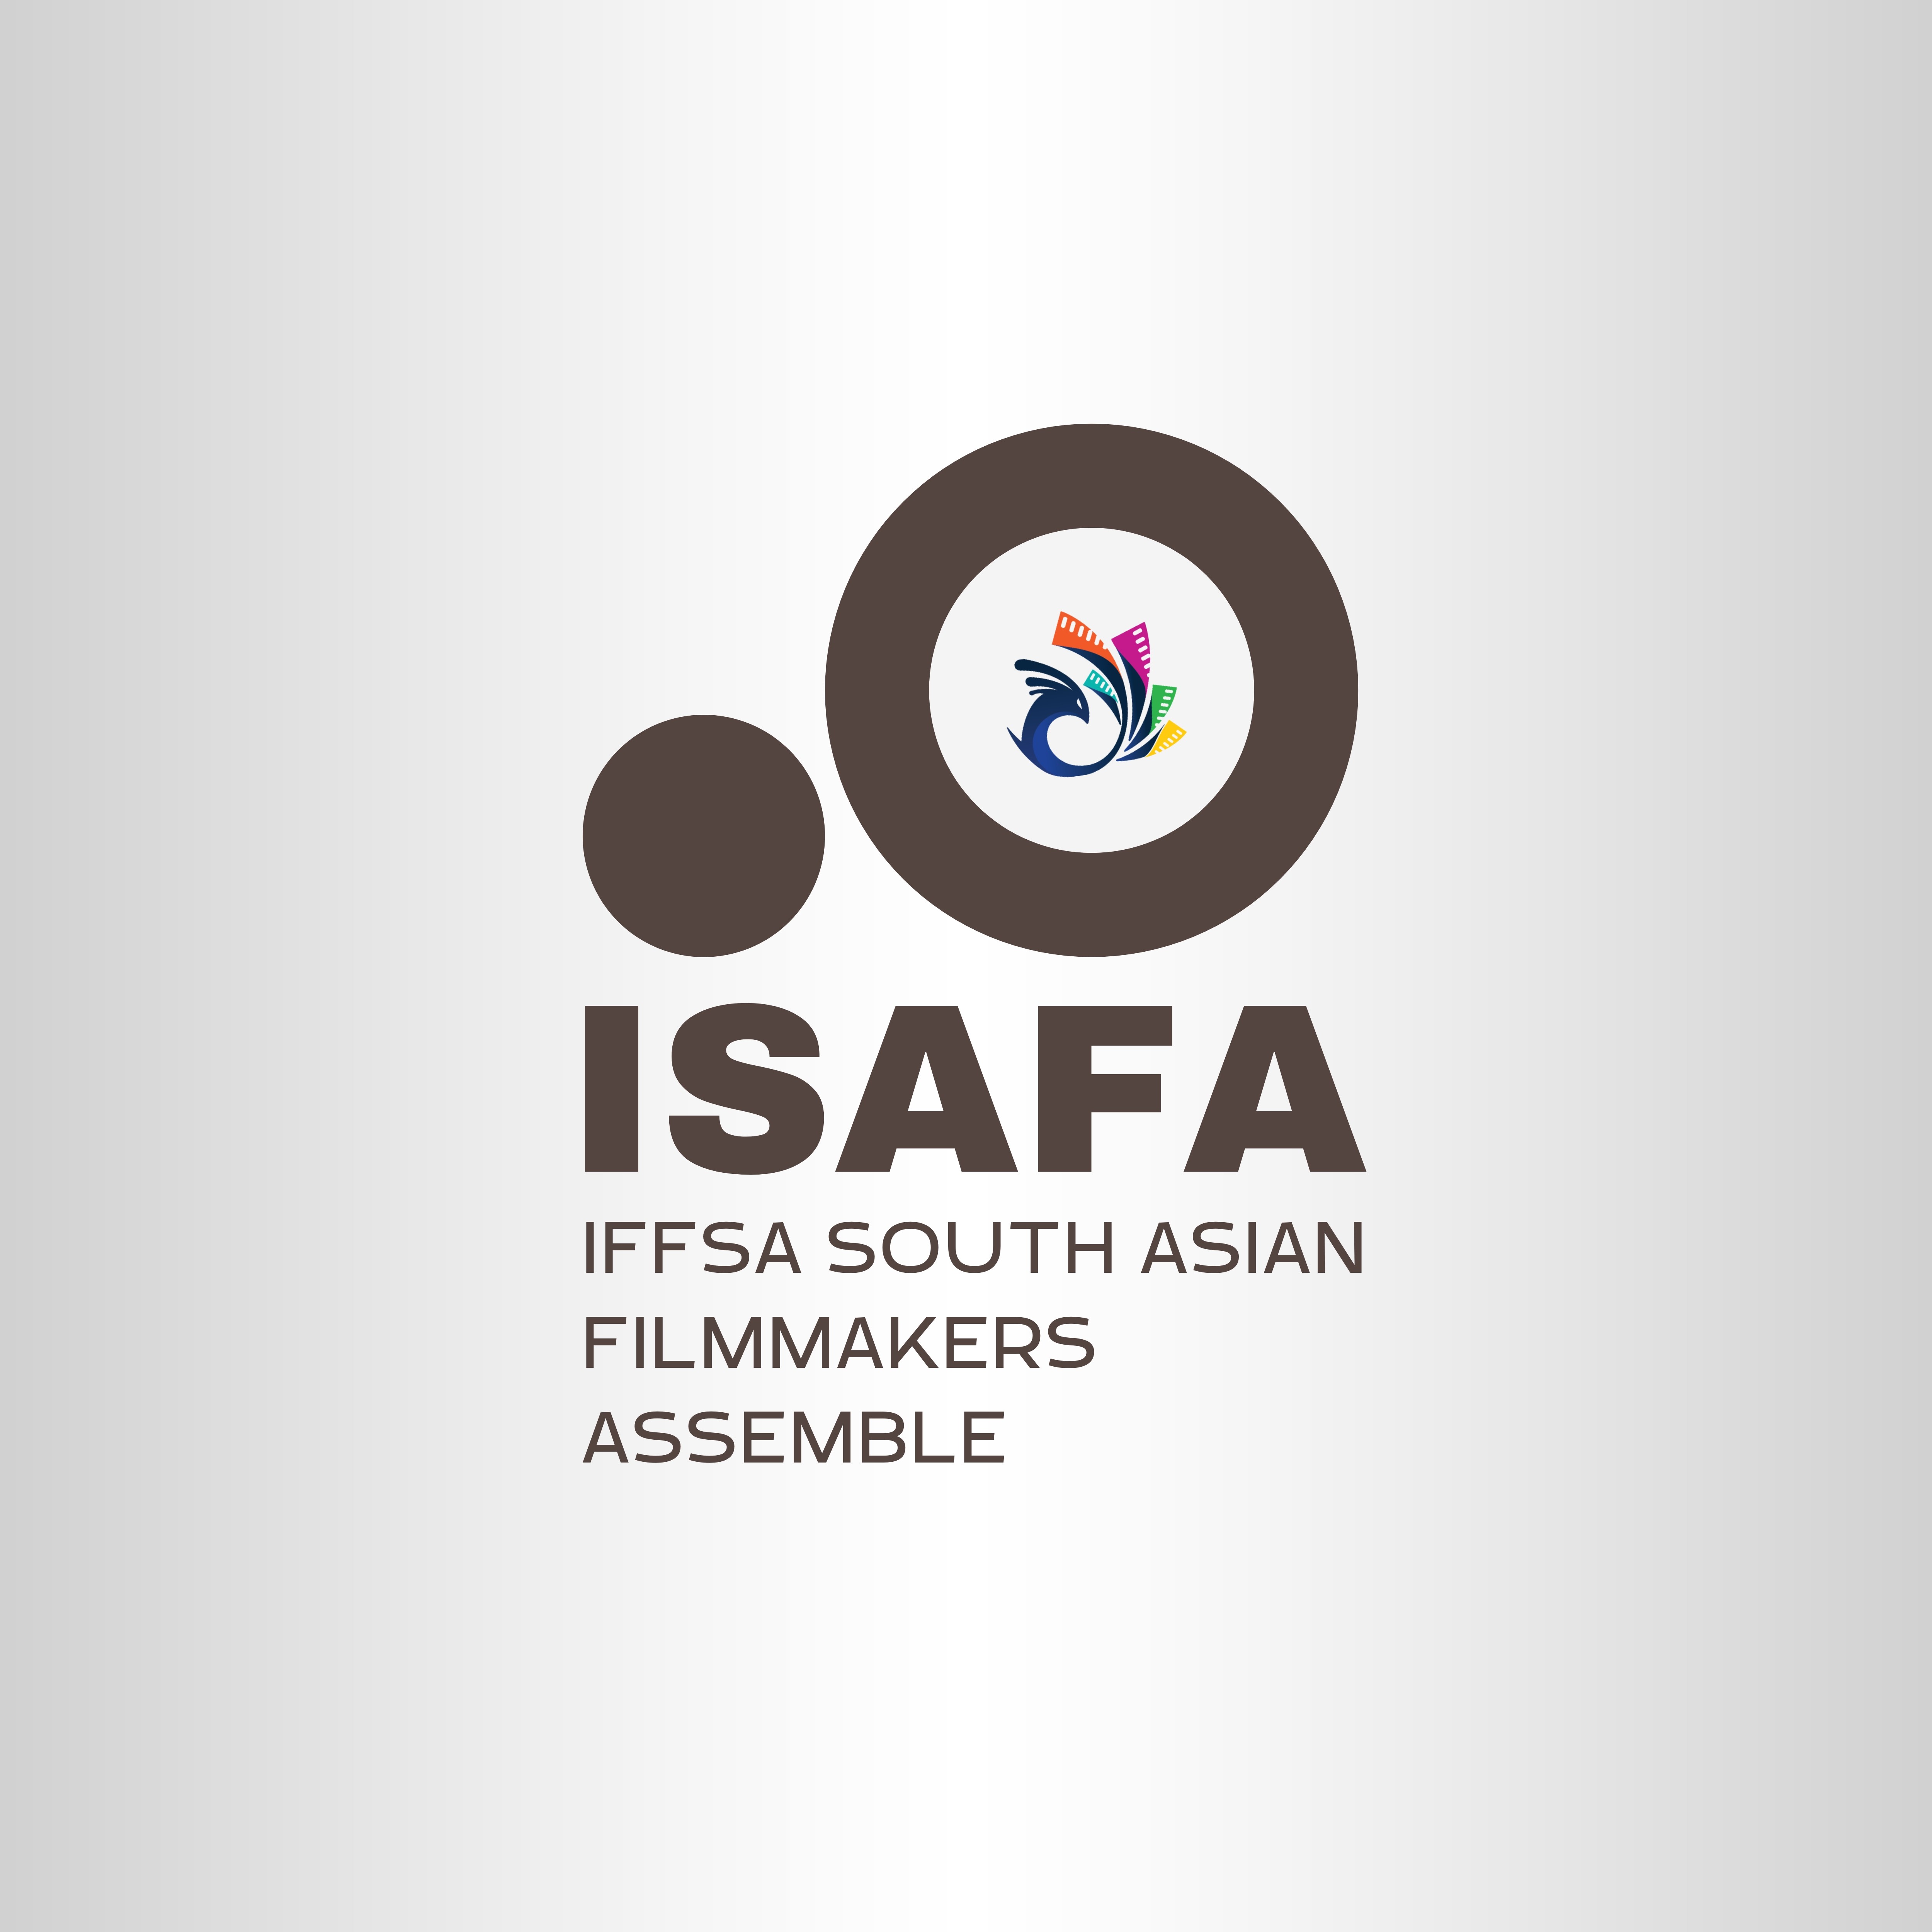 IFFSA SOUTH ASIAN FILMMAKERS ASSEMBLE